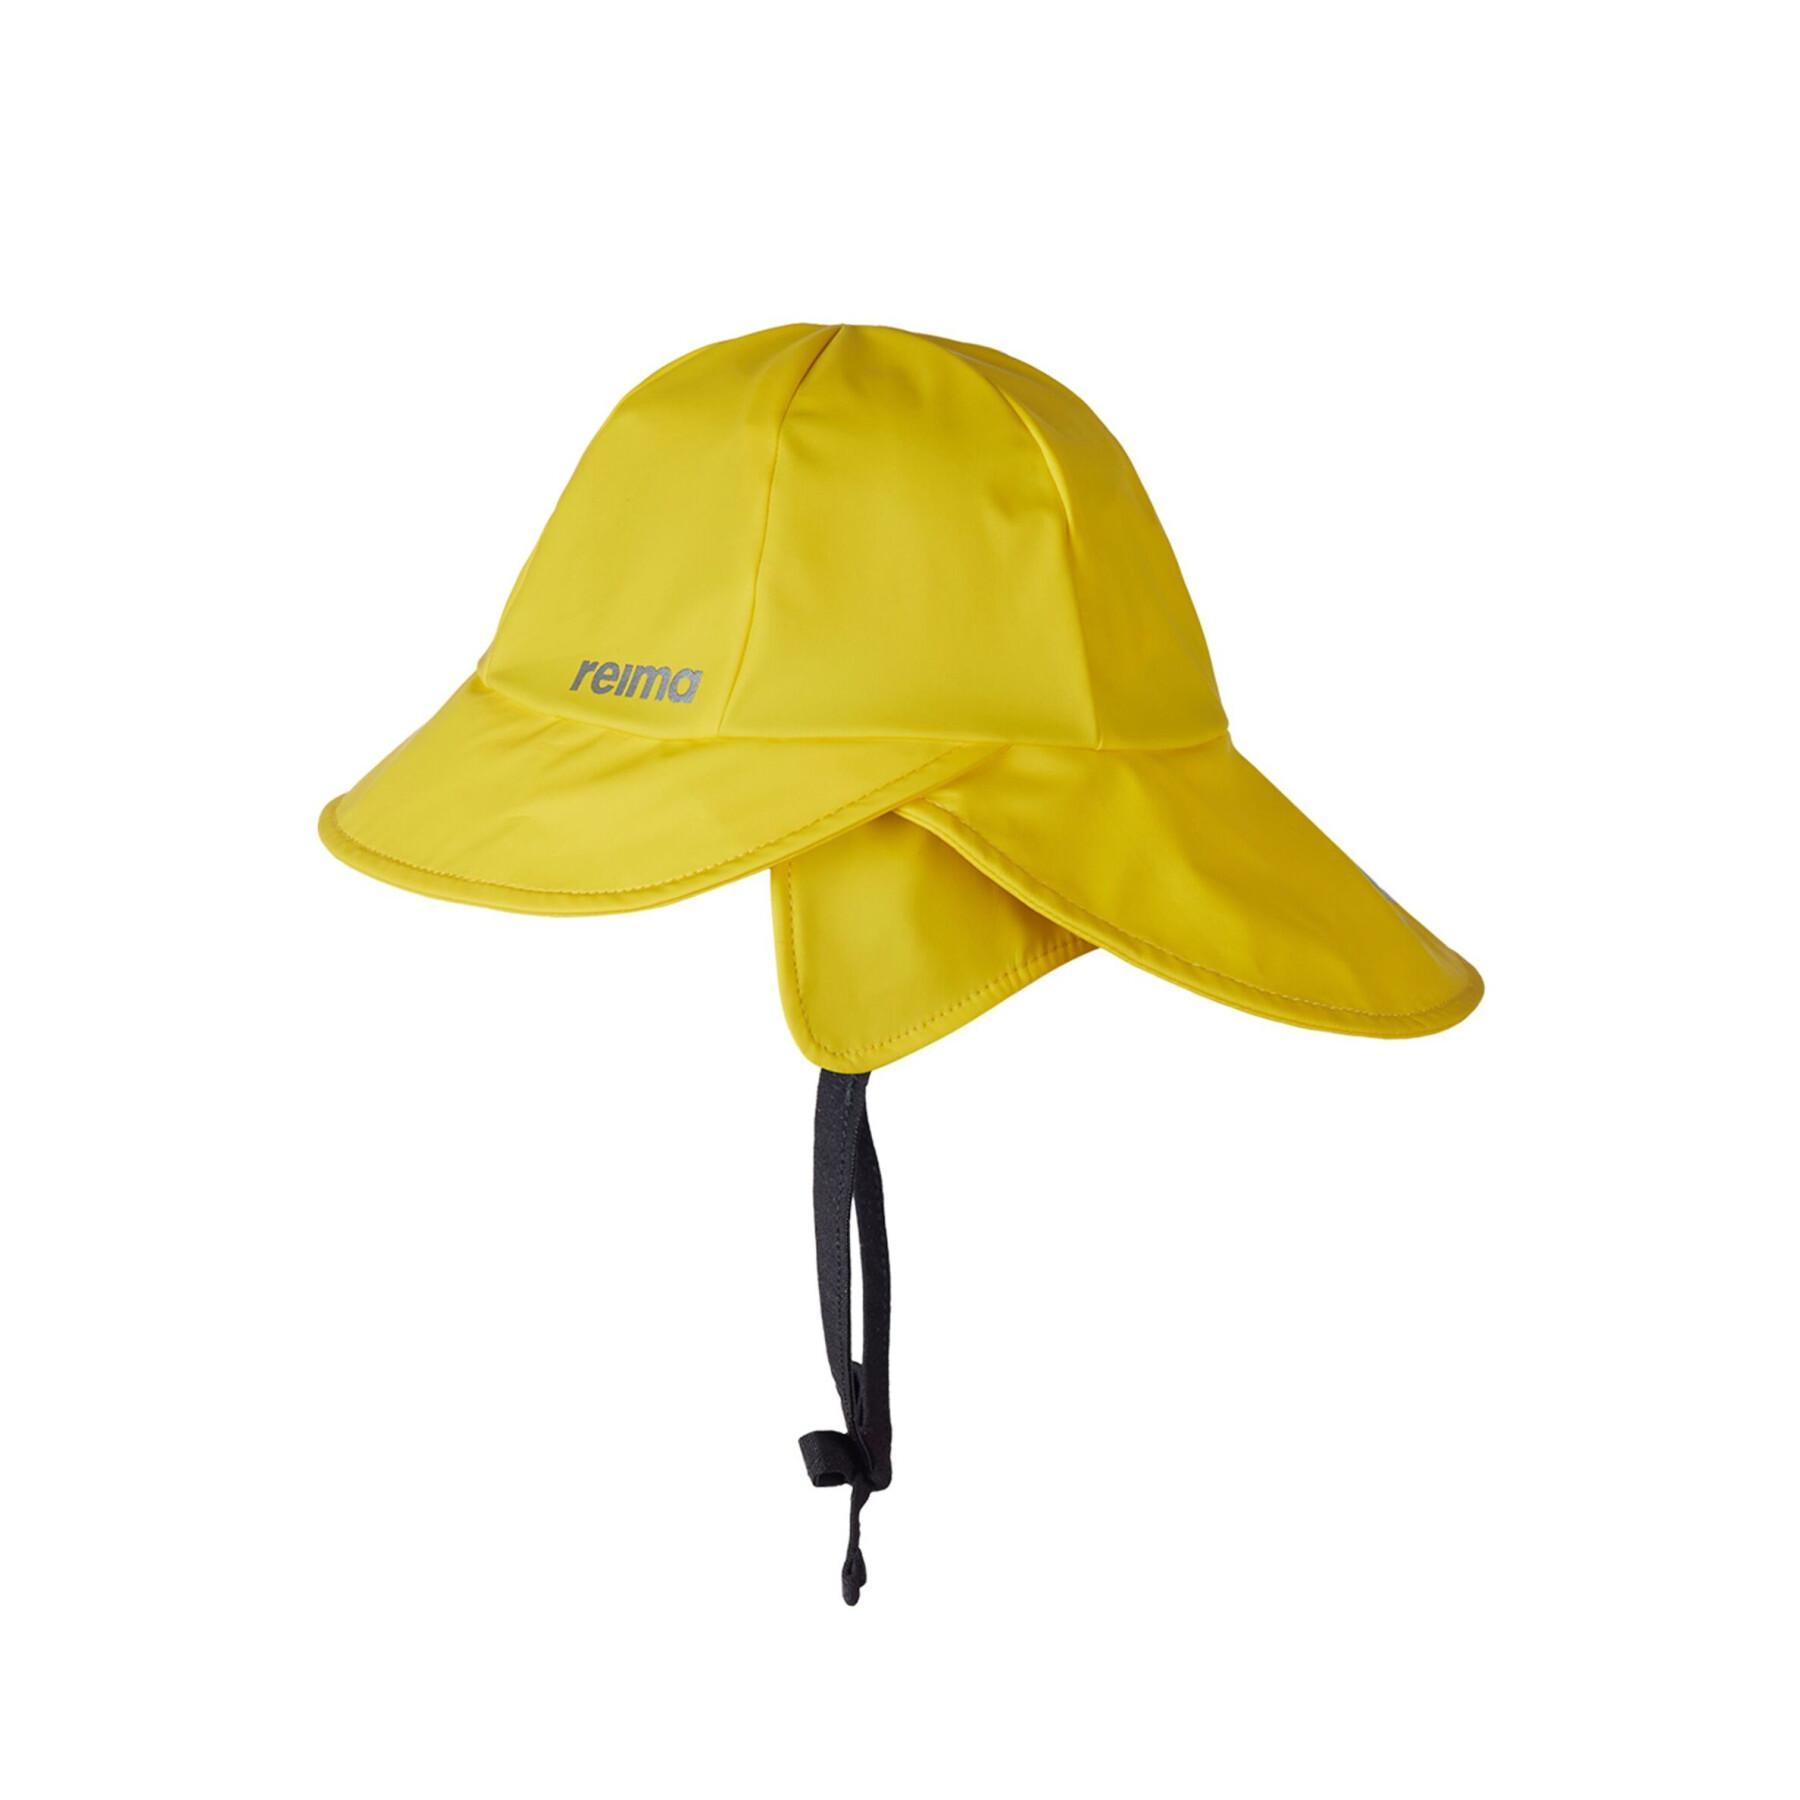 Rain hat for children Reima Rainy